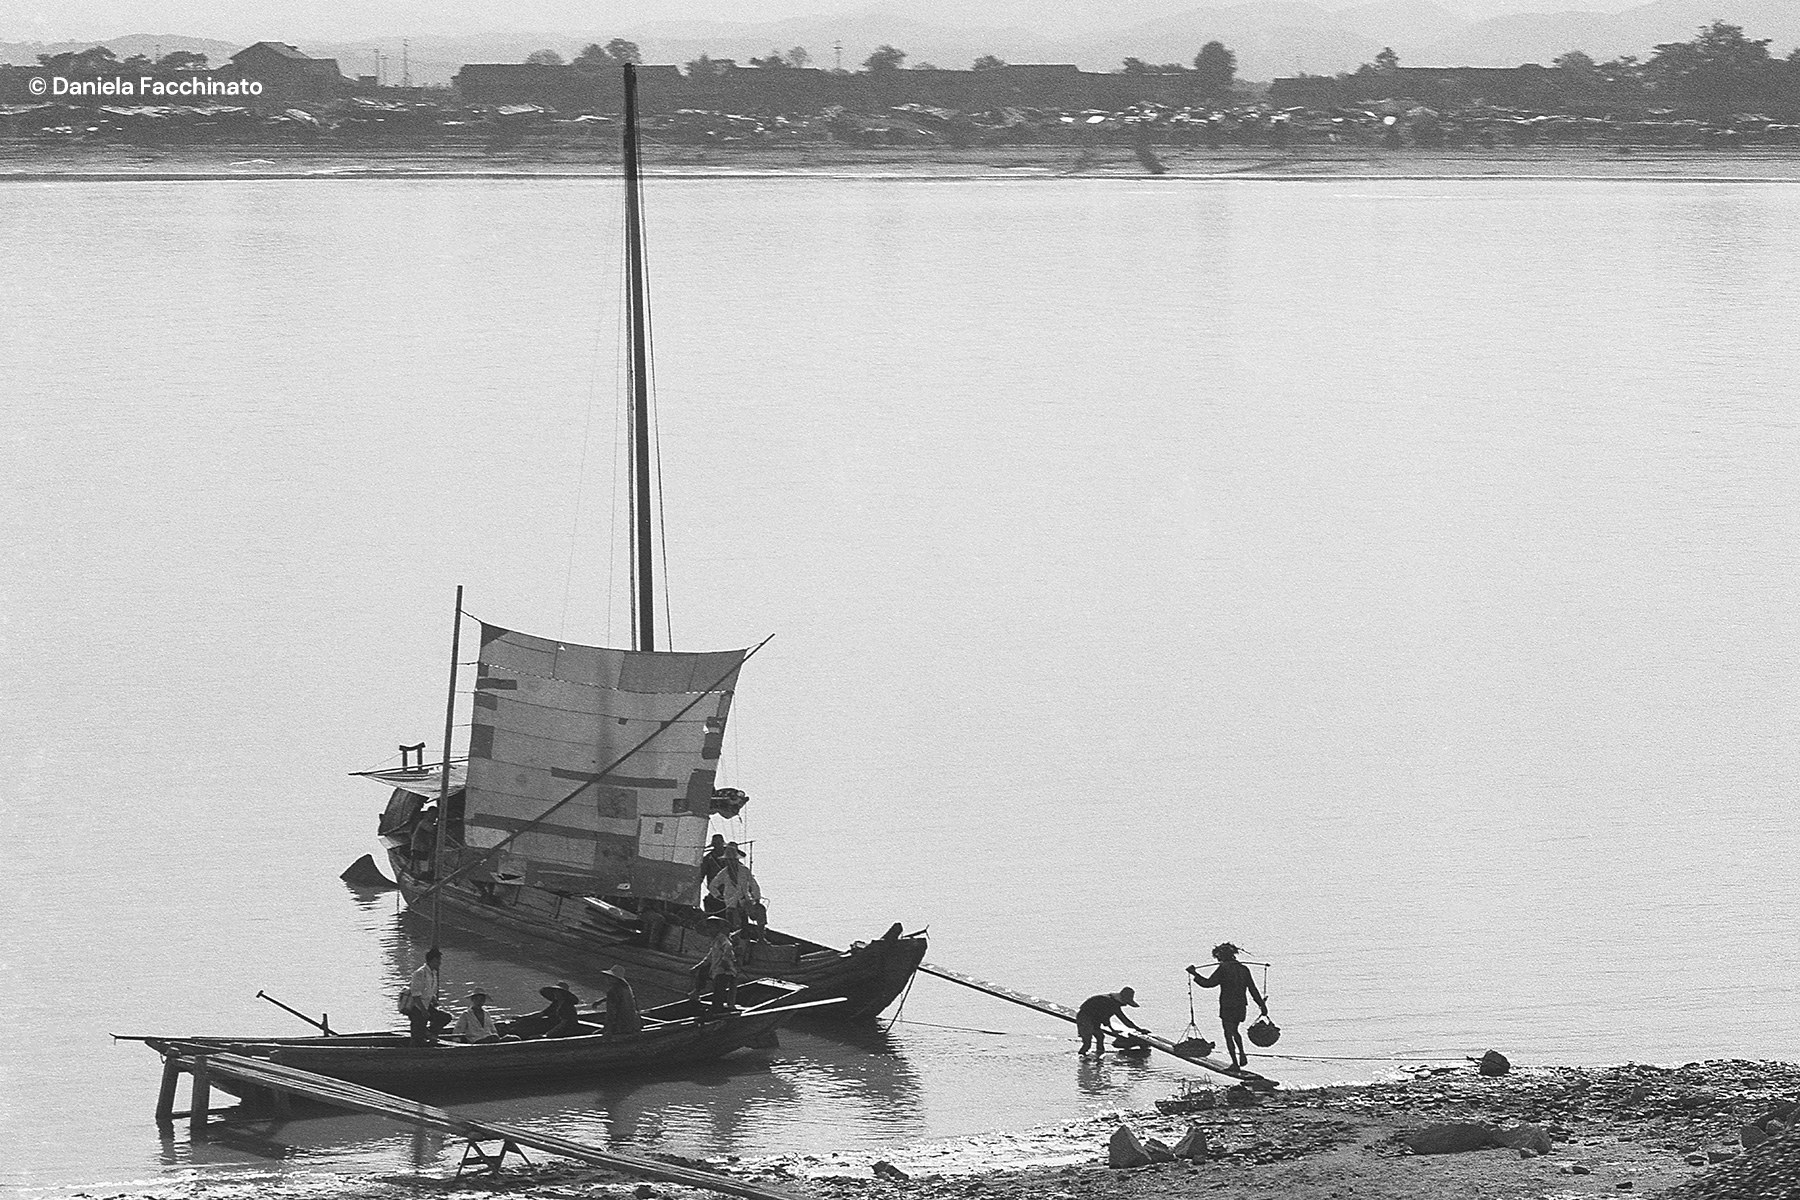 Guilin, Guangxi, China, 1975. River transport along the Li river